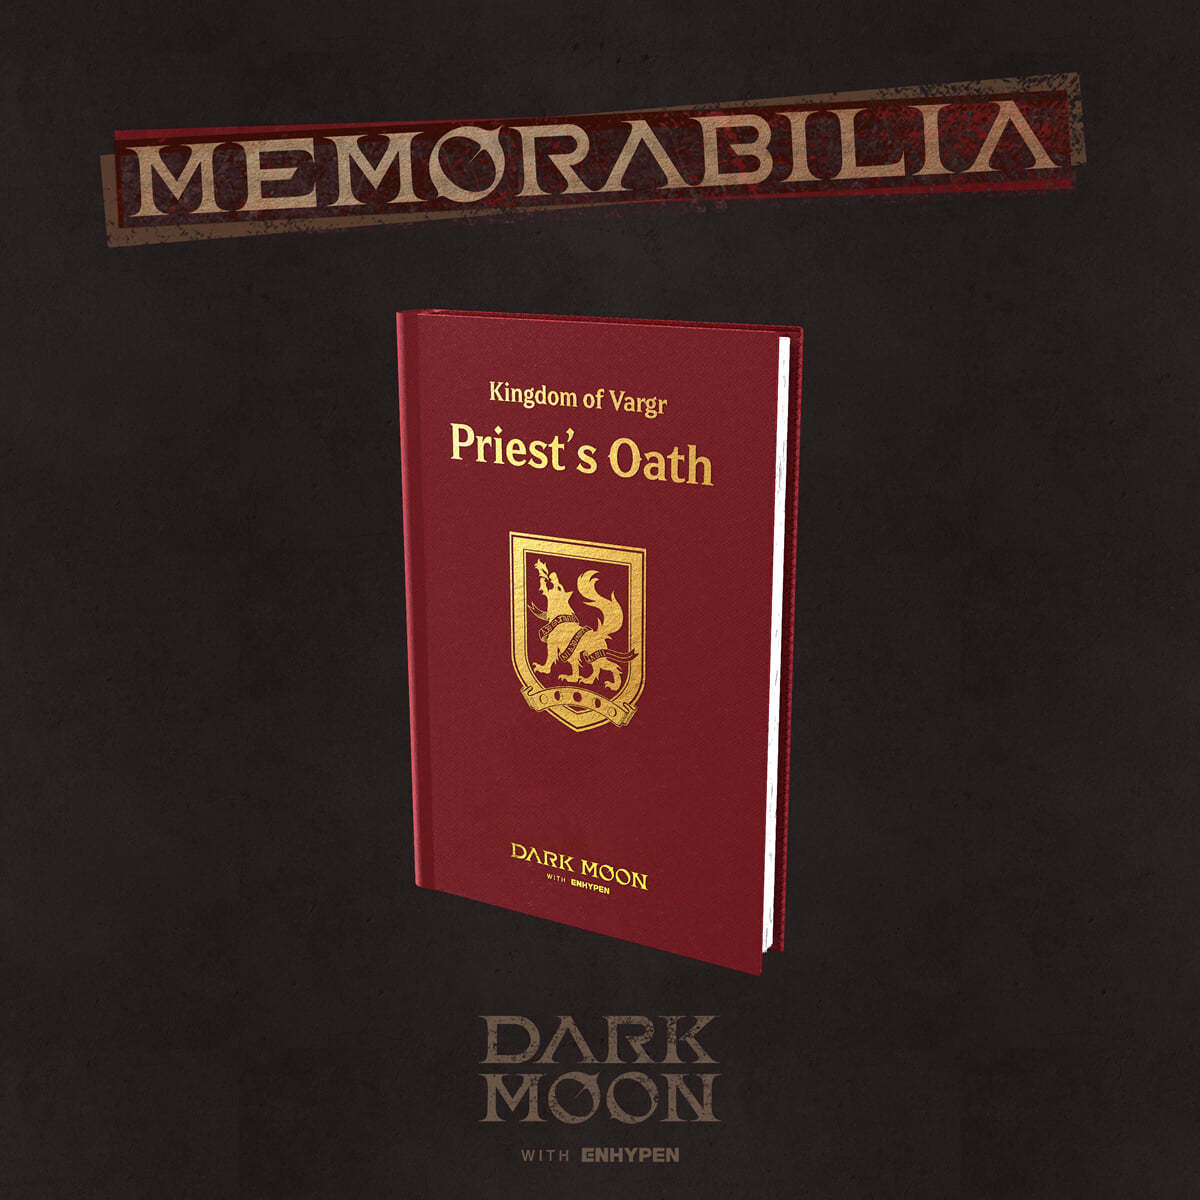 ENHYPEN – DARK MOON SPECIAL ALBUM [MEMORABILIA] (Vargr Ver.)